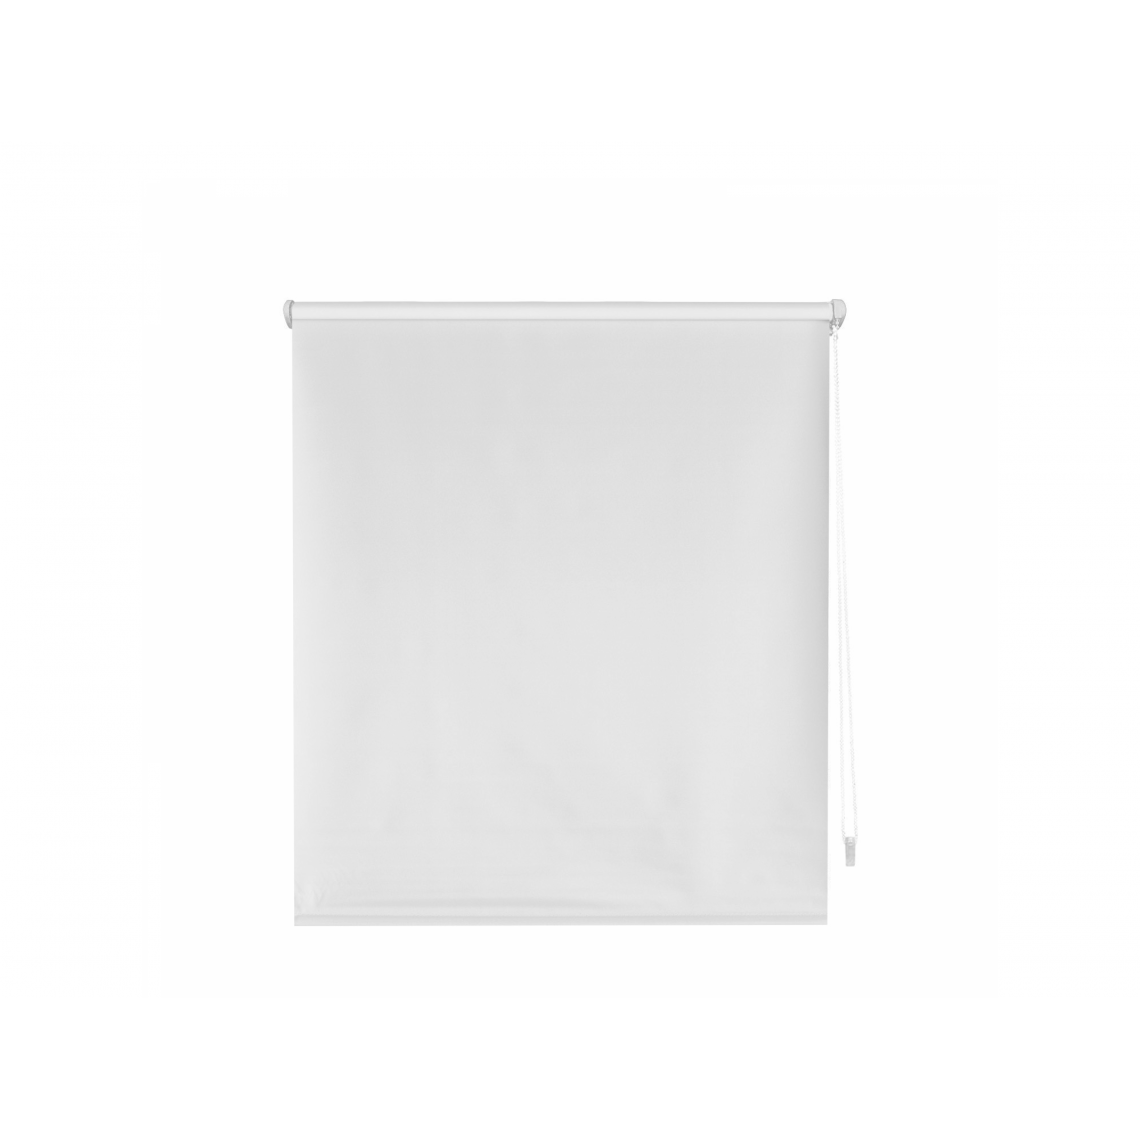 Purline - Store enrouleur 37X180 BRUT3 Opaque EASY FIX, montage facile par pinces sur cadre de fenêtre ou adhésif - Store compatible Velux